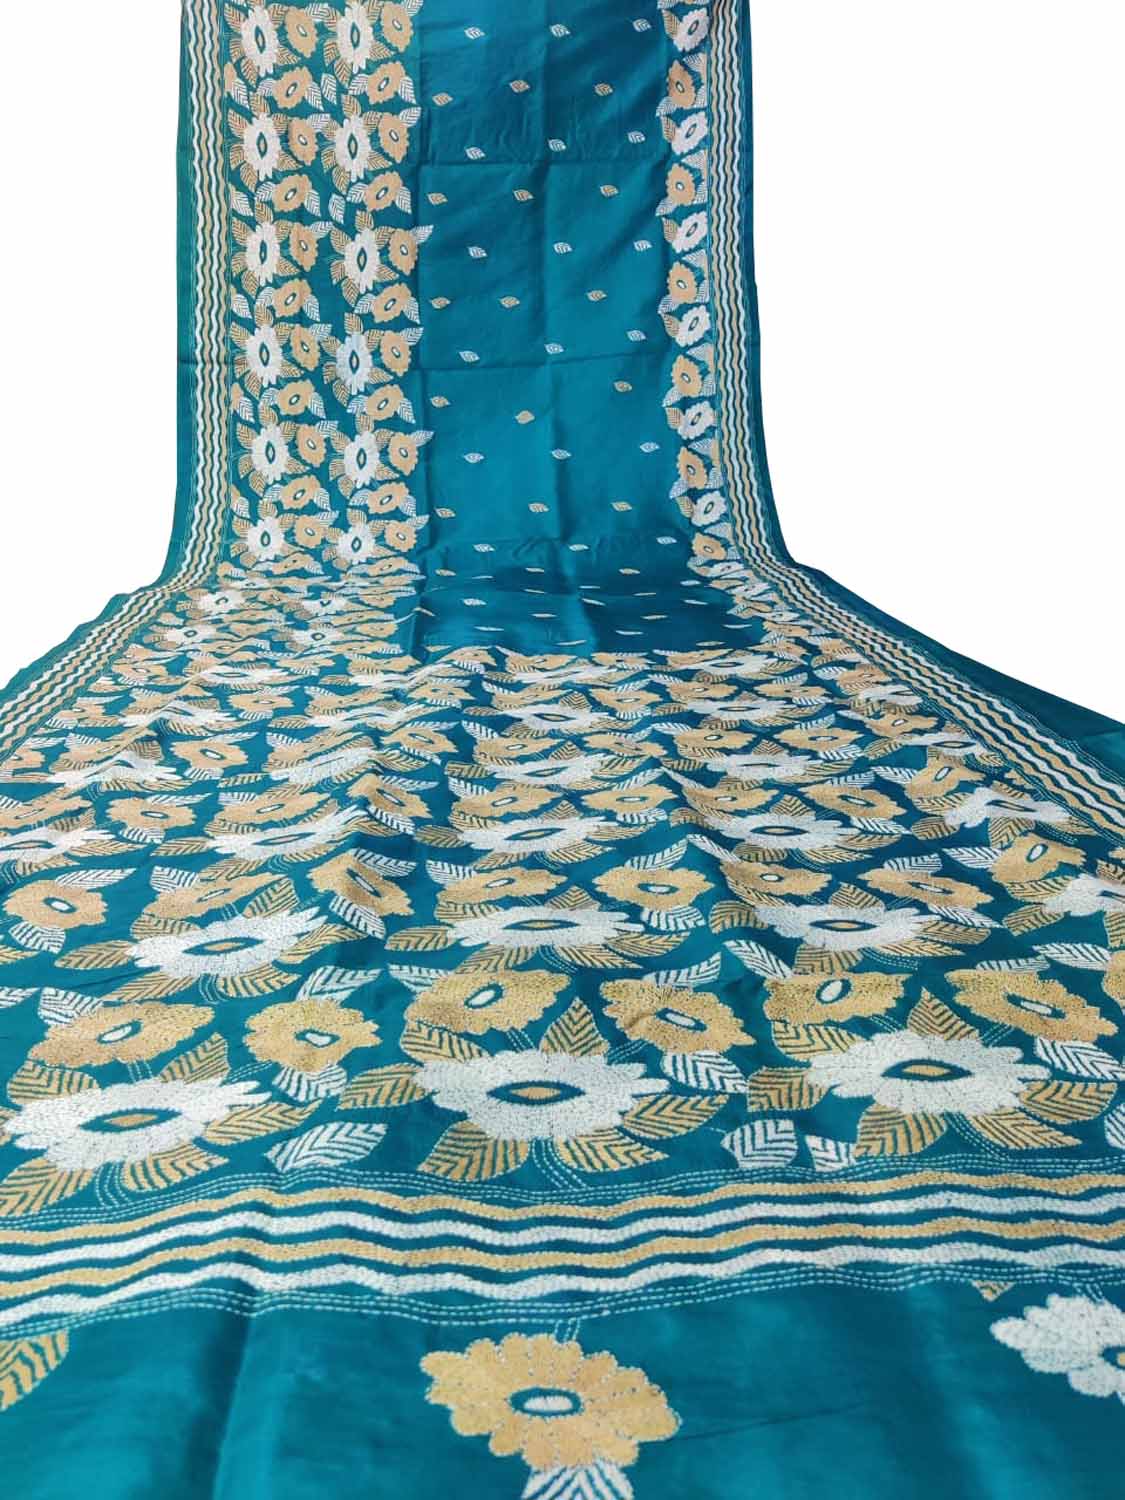 Exquisite Blue Hand Embroidered Kantha Work Bangalore Silk Saree - Luxurion World